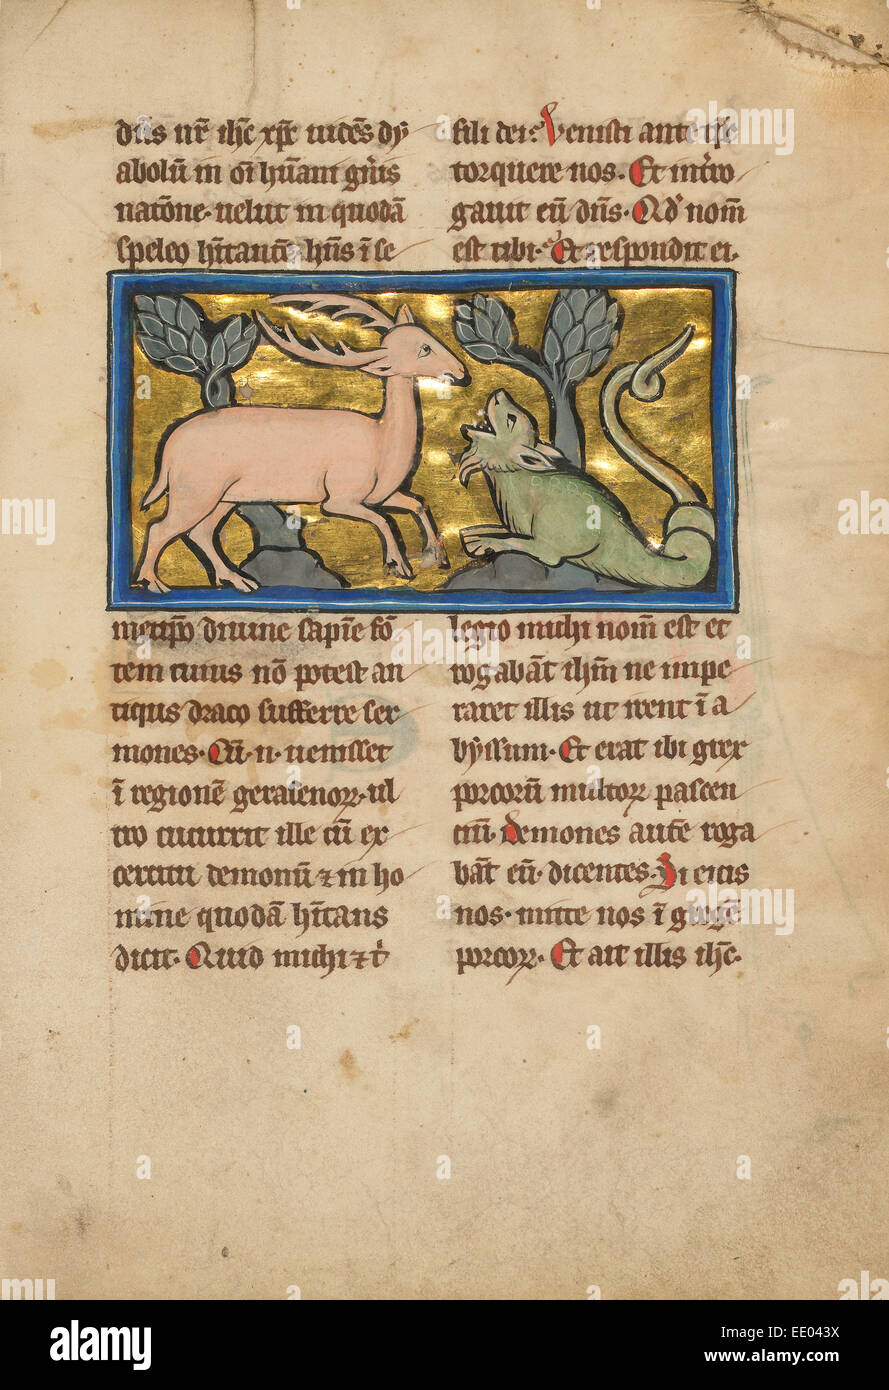 Un cerf devant un Dragon-comme serpent ; inconnu ; Thérouanne ?, France (anciennement Flandre), Europe ; quatrième trimestre de 13e siècle Banque D'Images